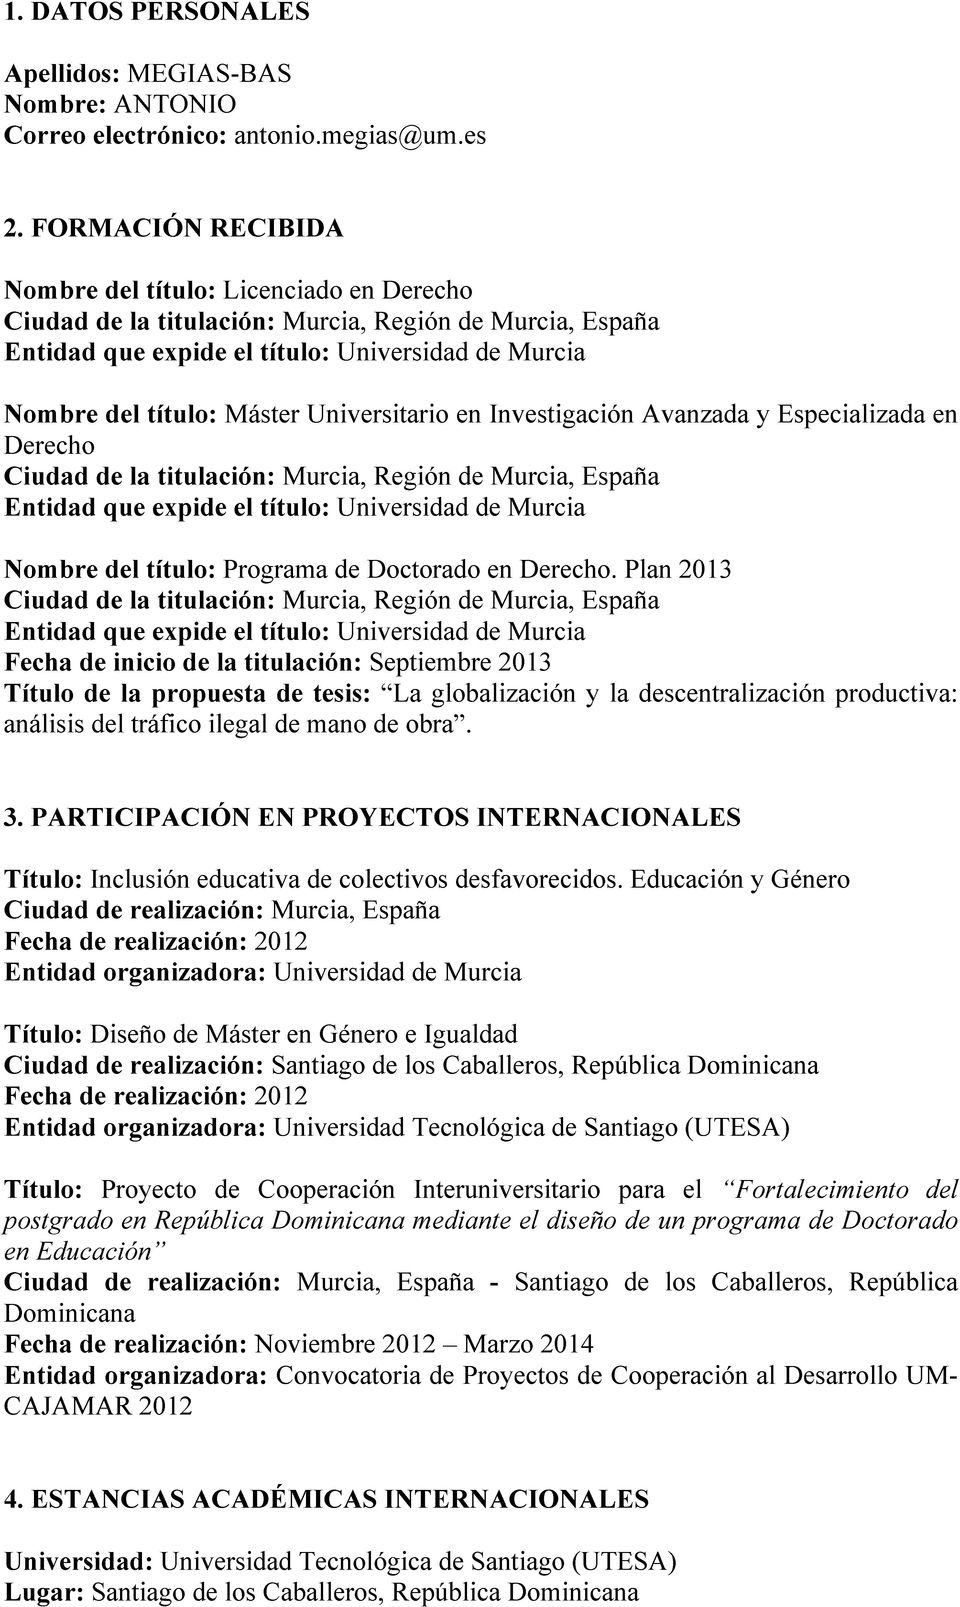 Derecho. Plan 2013 Fecha de inicio de la titulación: Septiembre 2013 Título de la propuesta de tesis: La globalización y la descentralización productiva: análisis del tráfico ilegal de mano de obra.